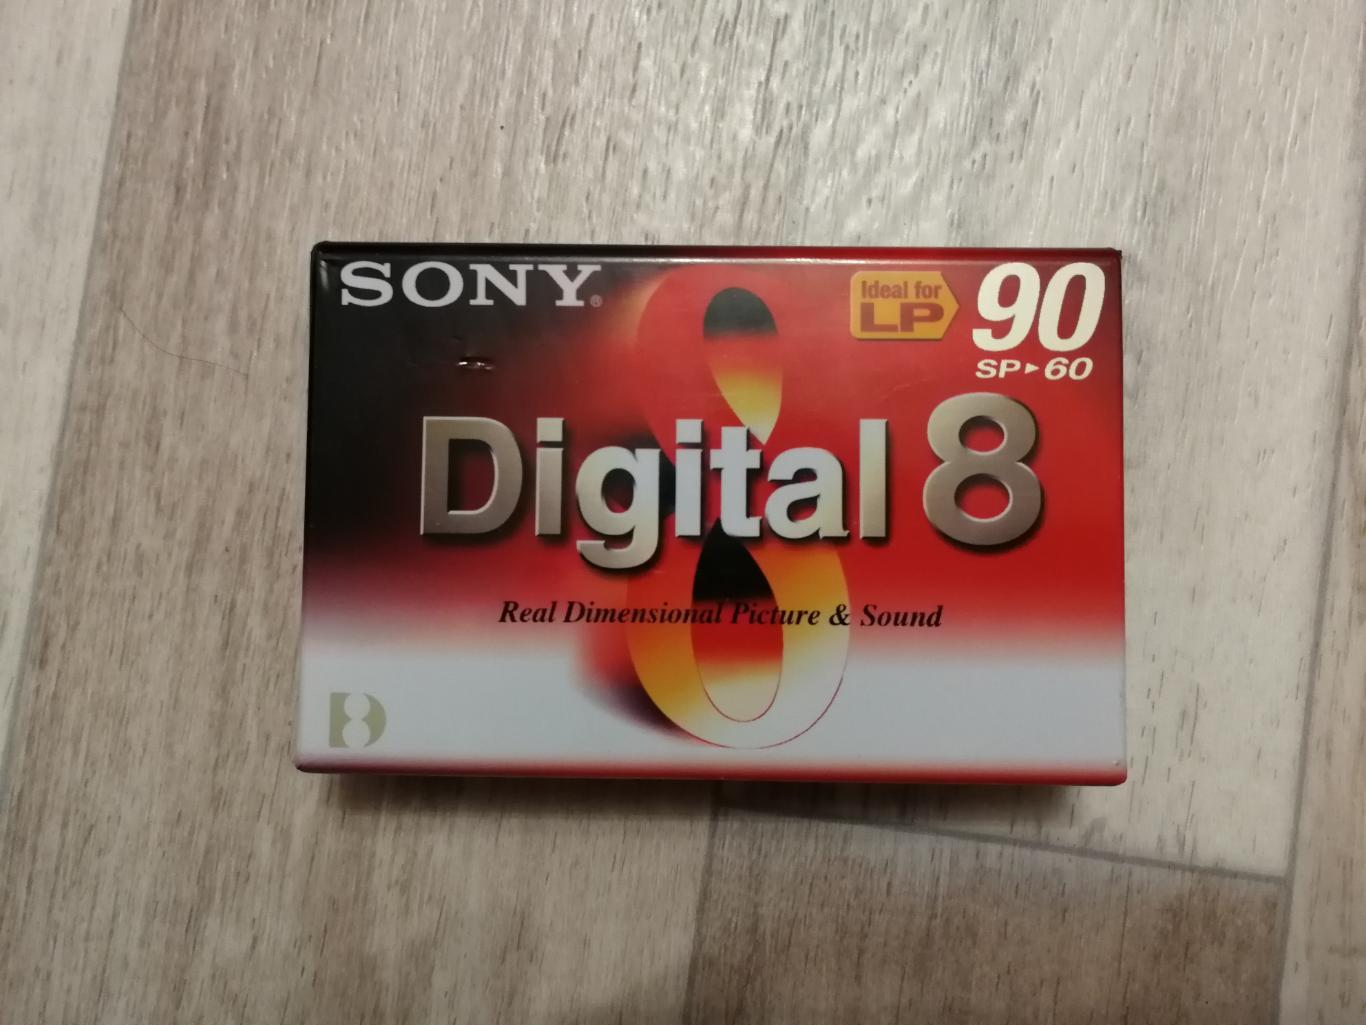 Видеокассета Sony Digital 8 N8-60P2 (новая, запечатанная, чистая, редкая)